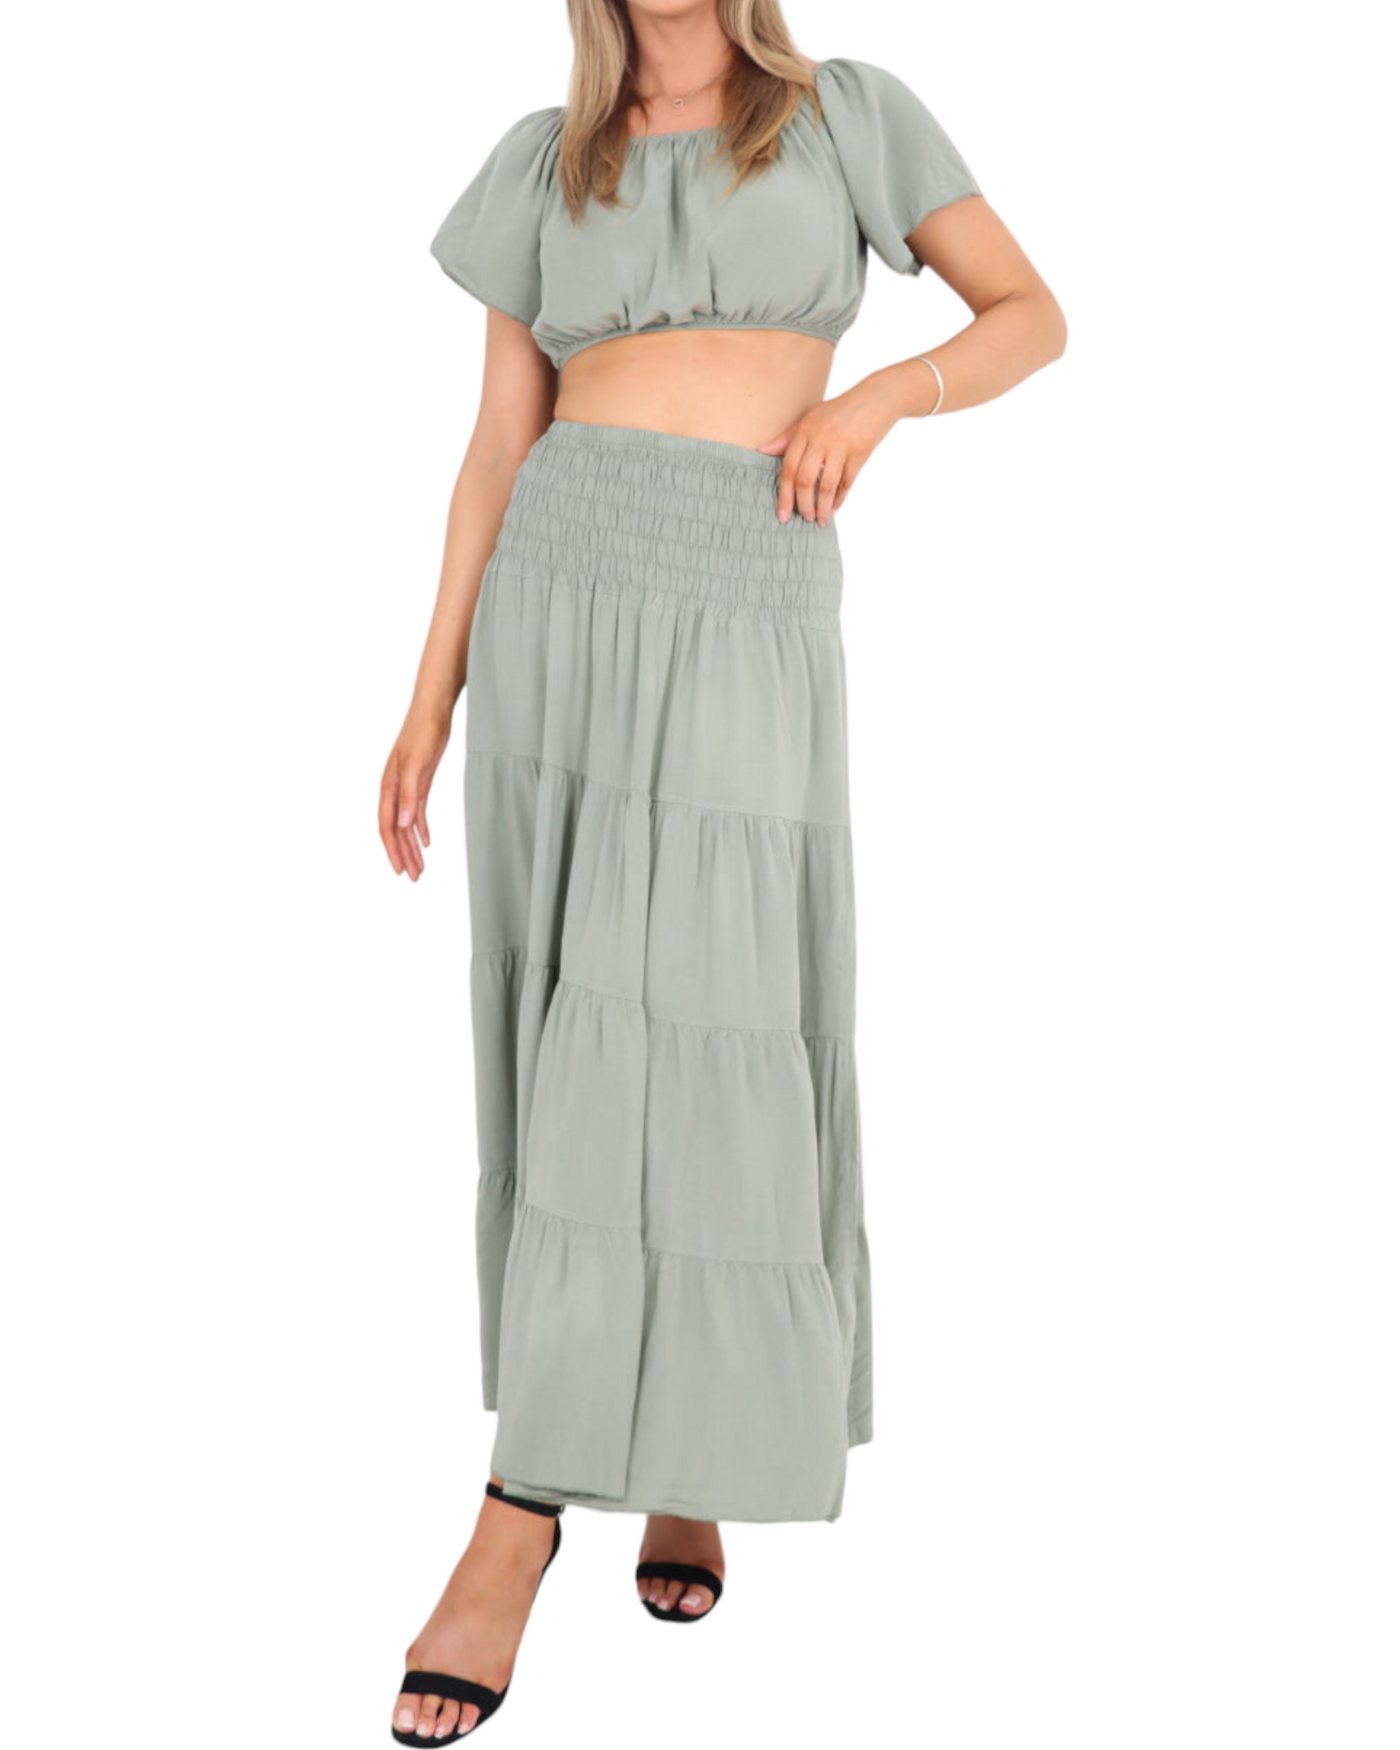 Bardot Crop Top and Maxi Skirt Set